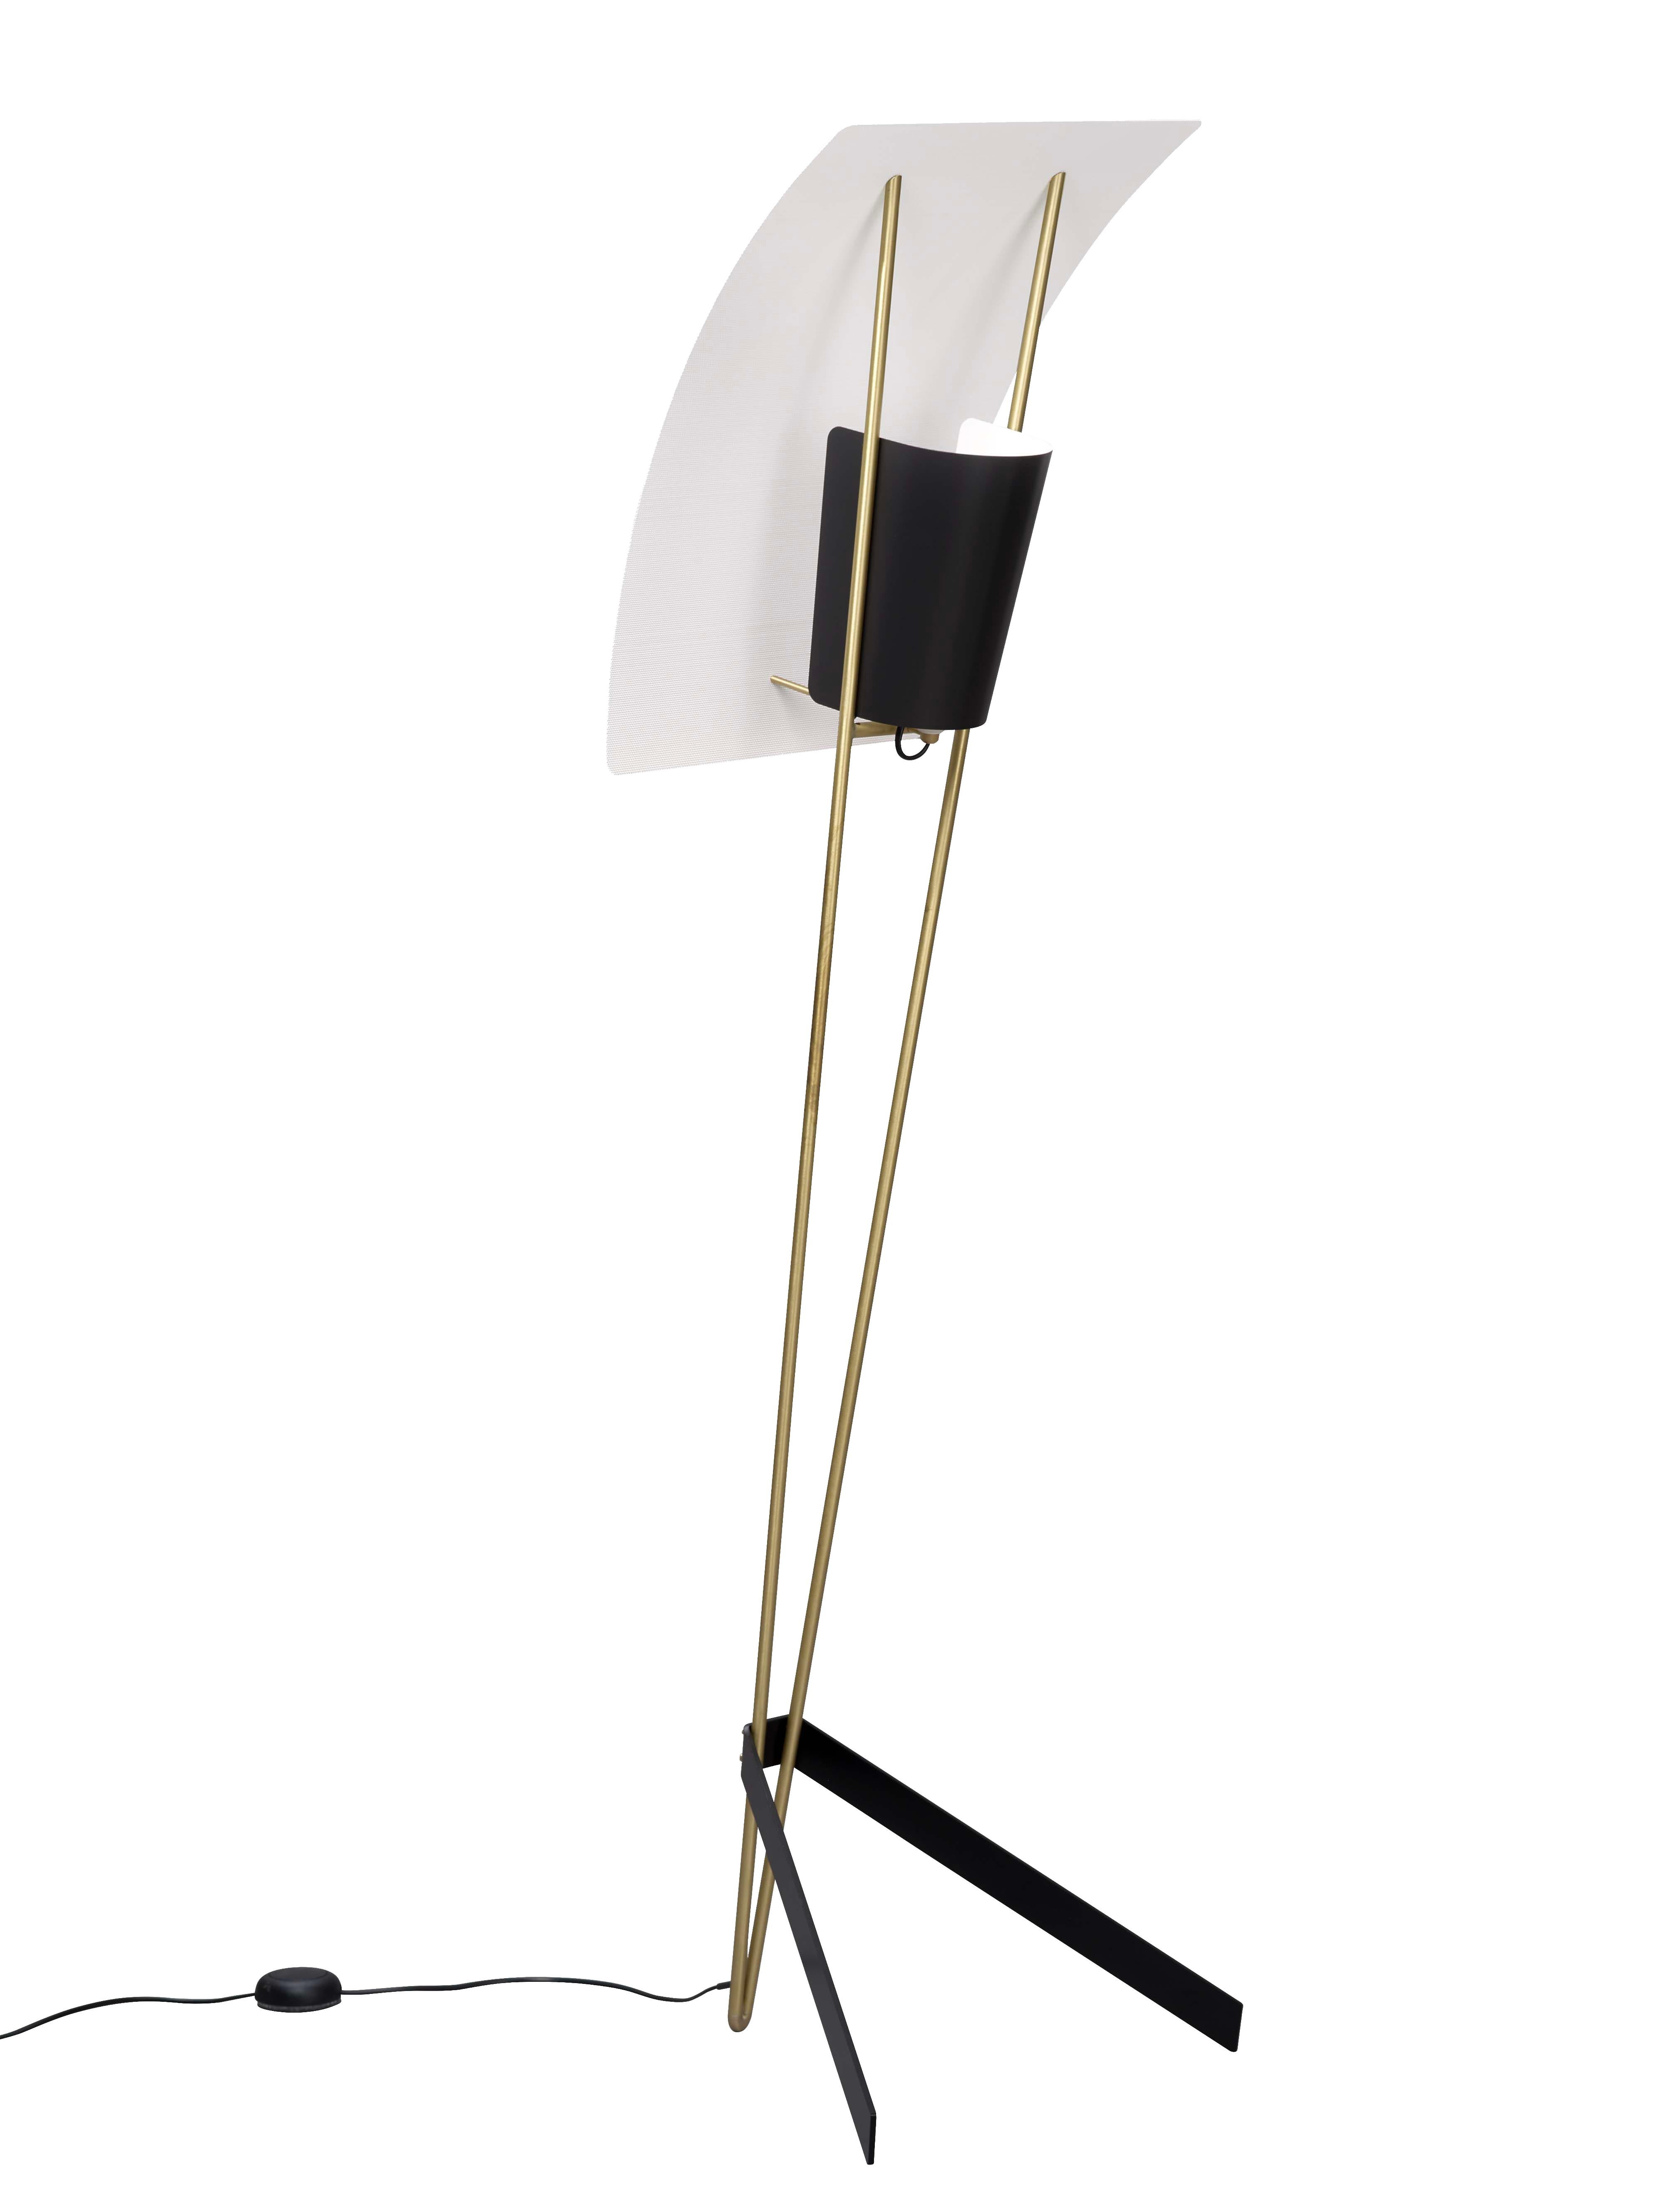 Pierre Guariche Kite Floor Lamp in White for Sammode Studio For Sale 11